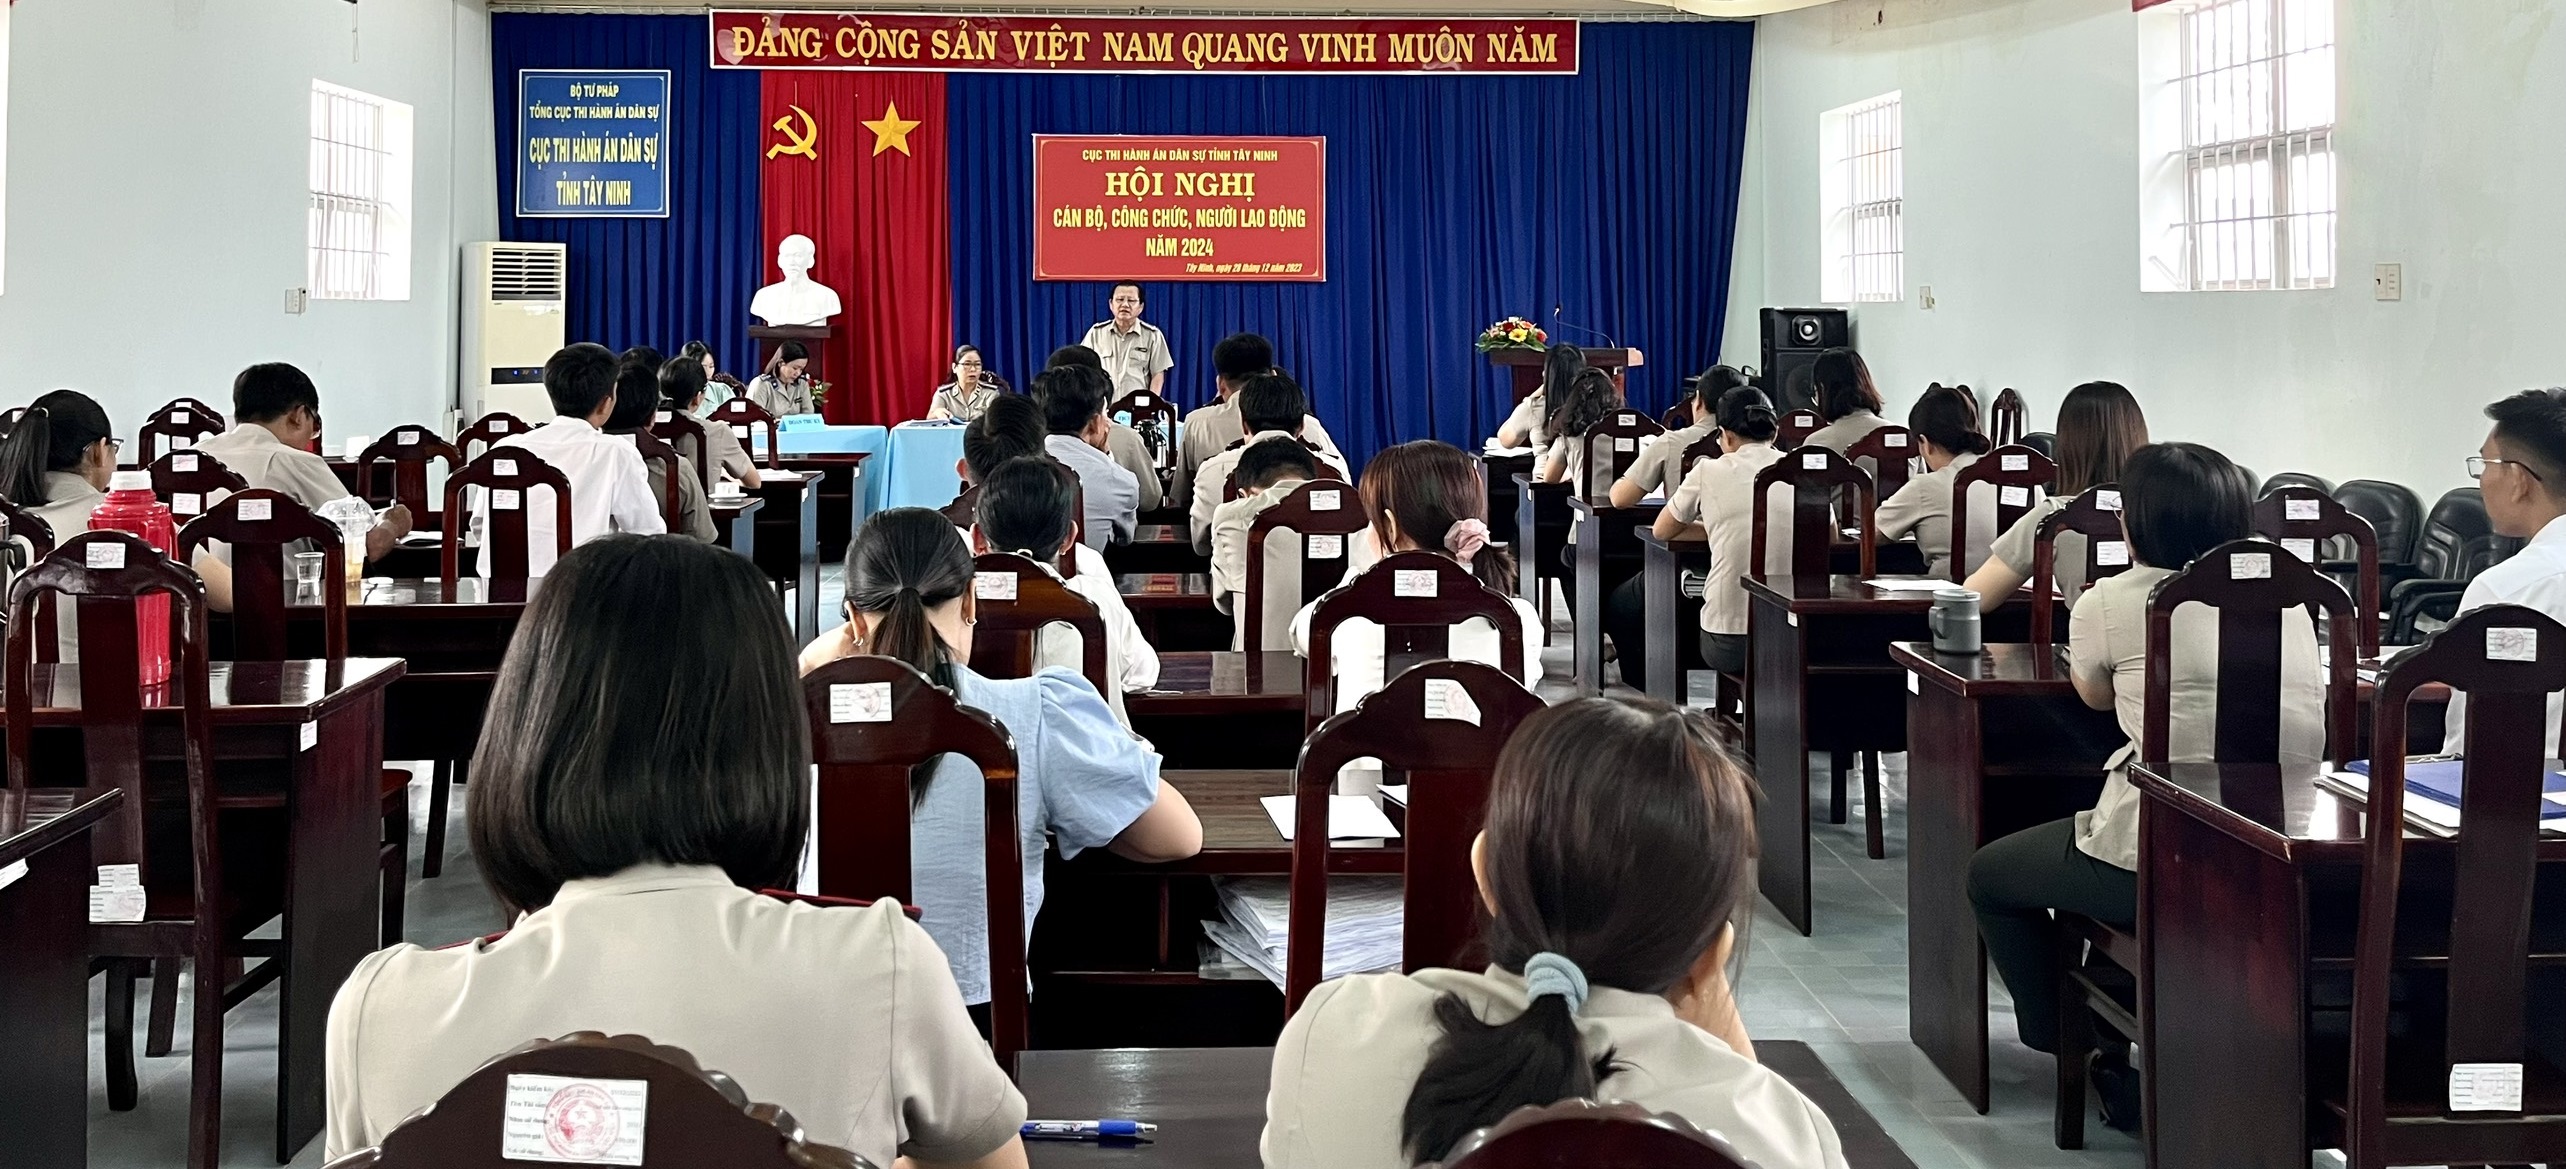 Cục Thi hành án dân sự tỉnh Tây Ninh tổ chức Hội nghị công chức, người lao động năm 2024